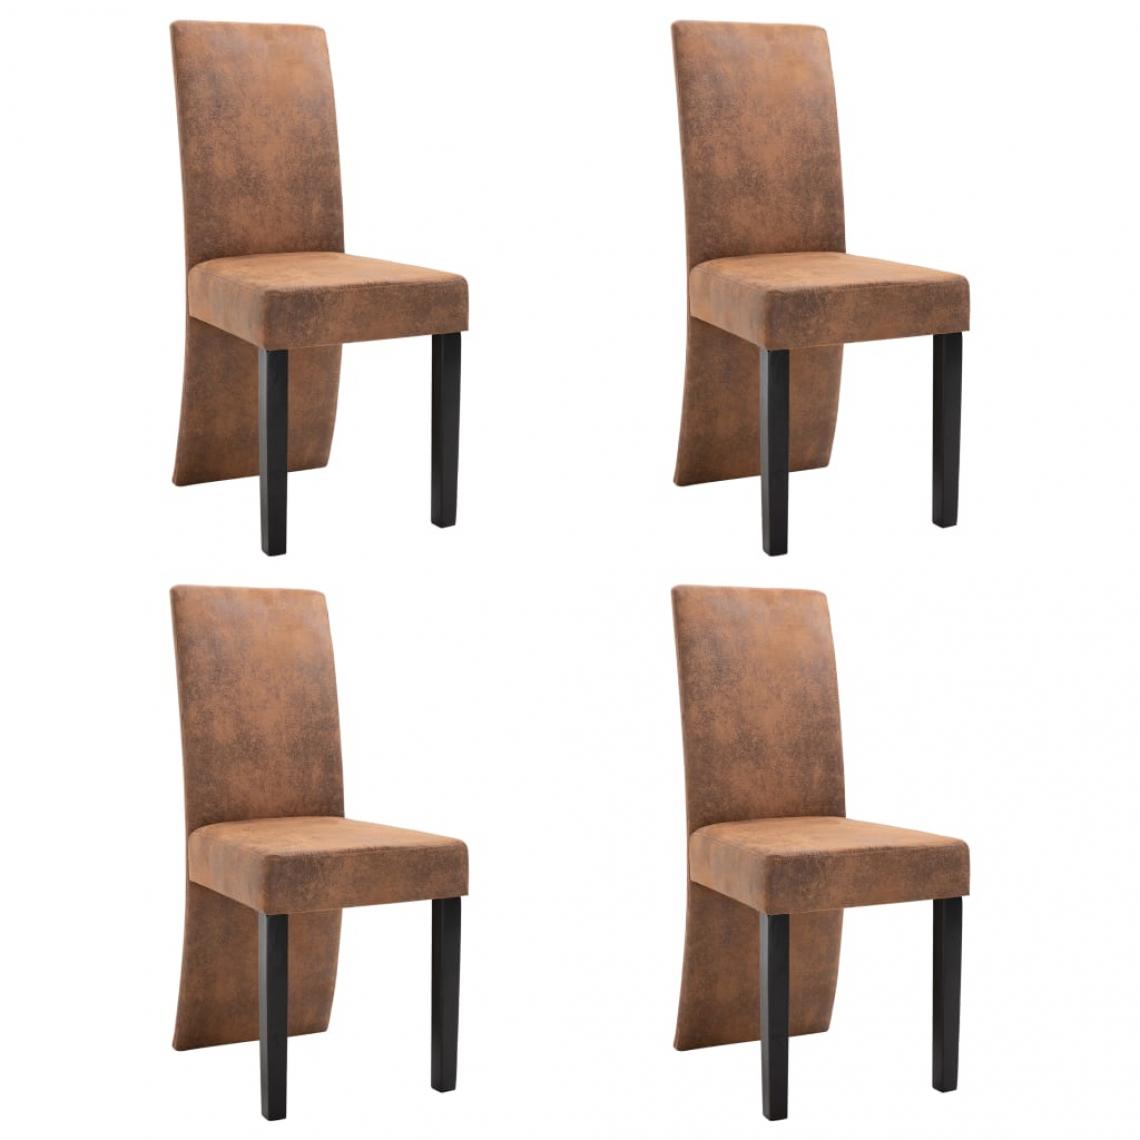 Decoshop26 - Lot de 4 chaises de salle à manger cuisine design moderne similicuir daim marron CDS021731 - Chaises